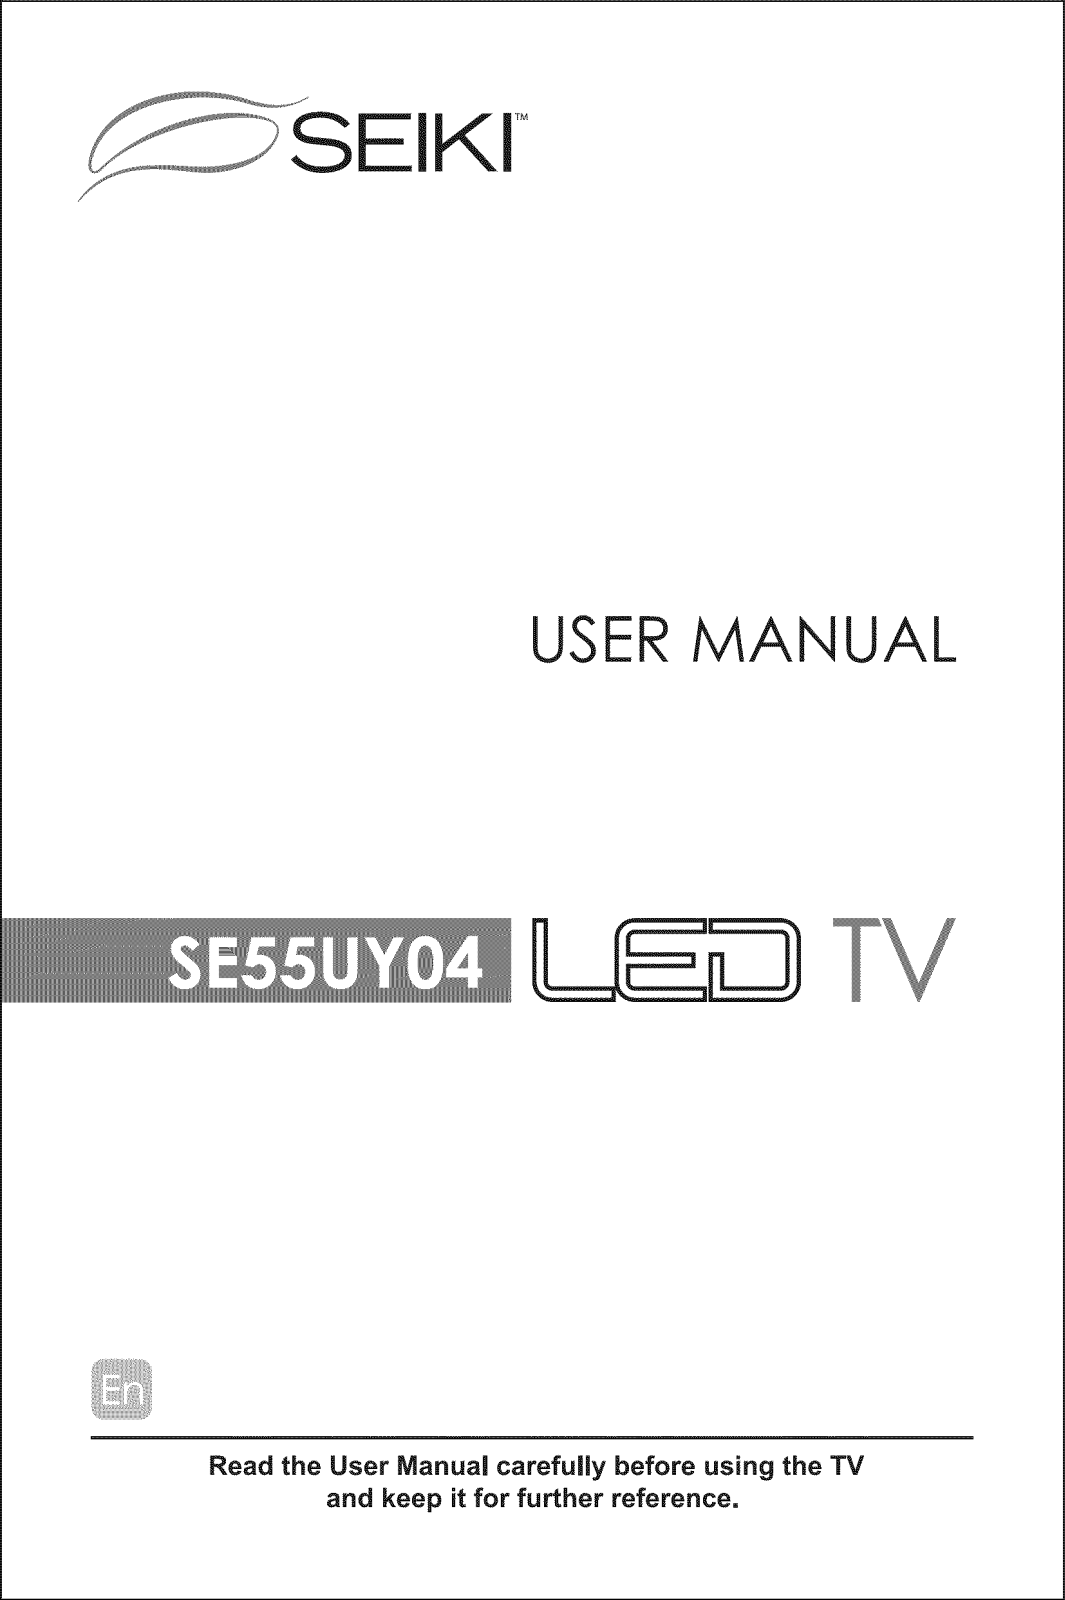 Seiki SE55UY04 Owner’s Manual